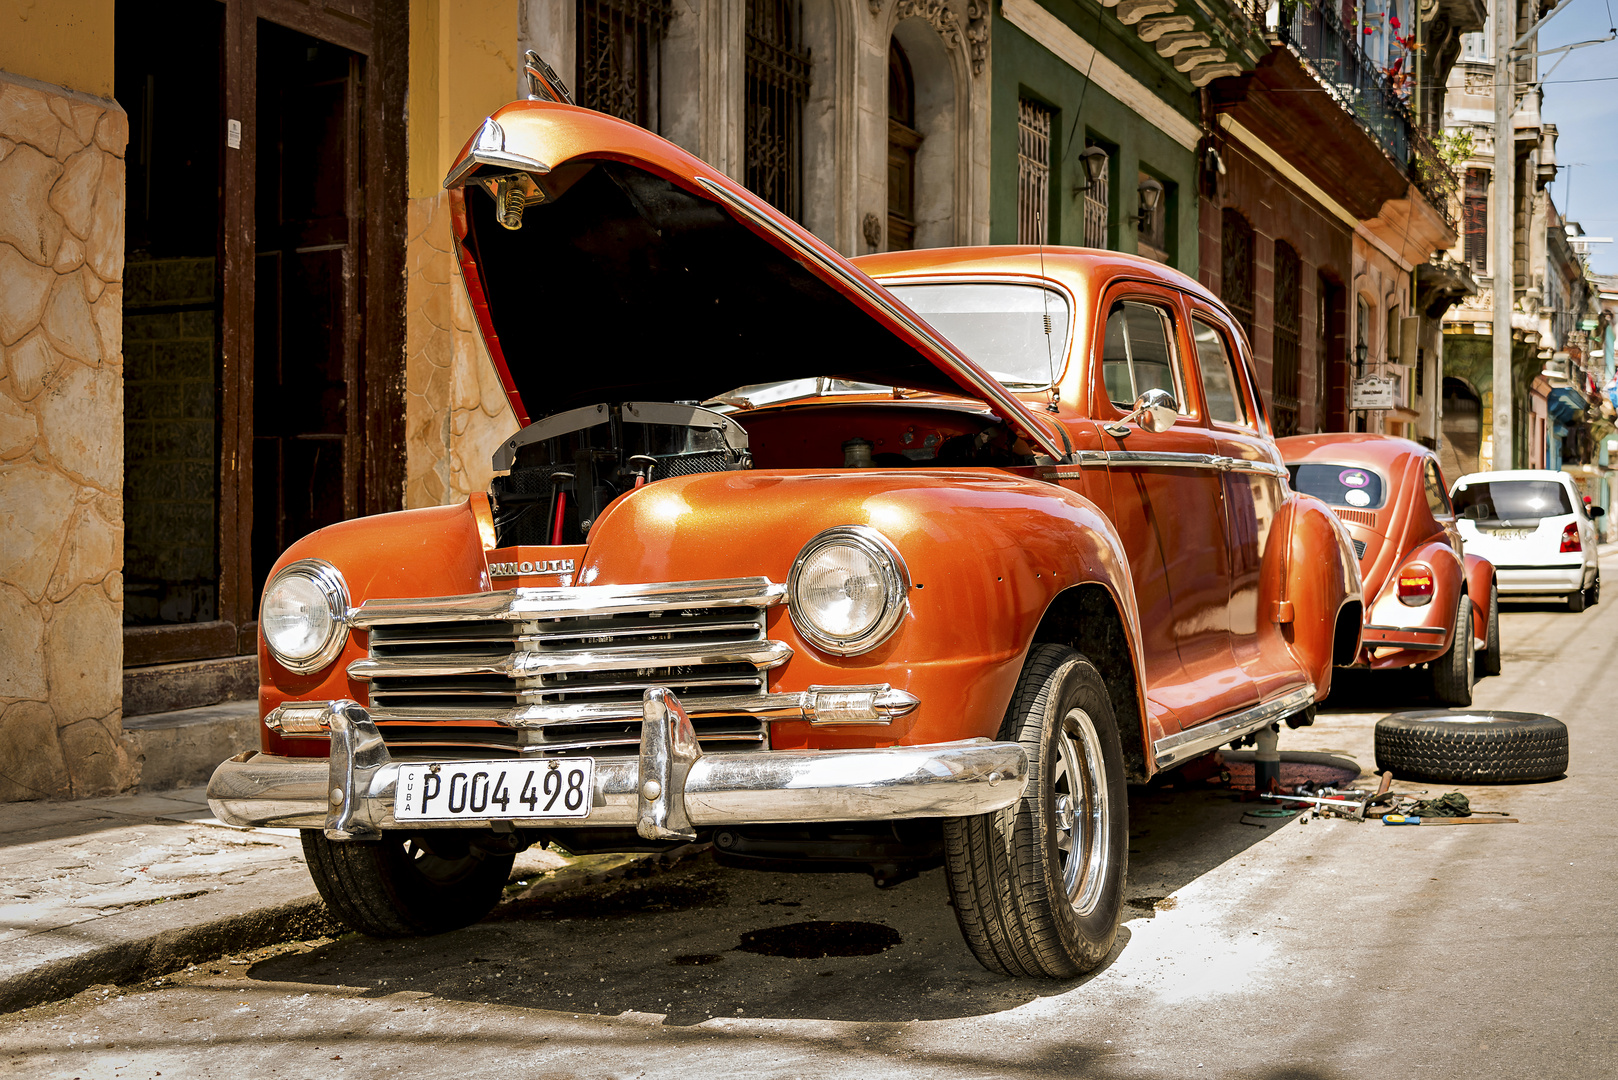 Ciudad Deportiva de La Habana - Cars 6